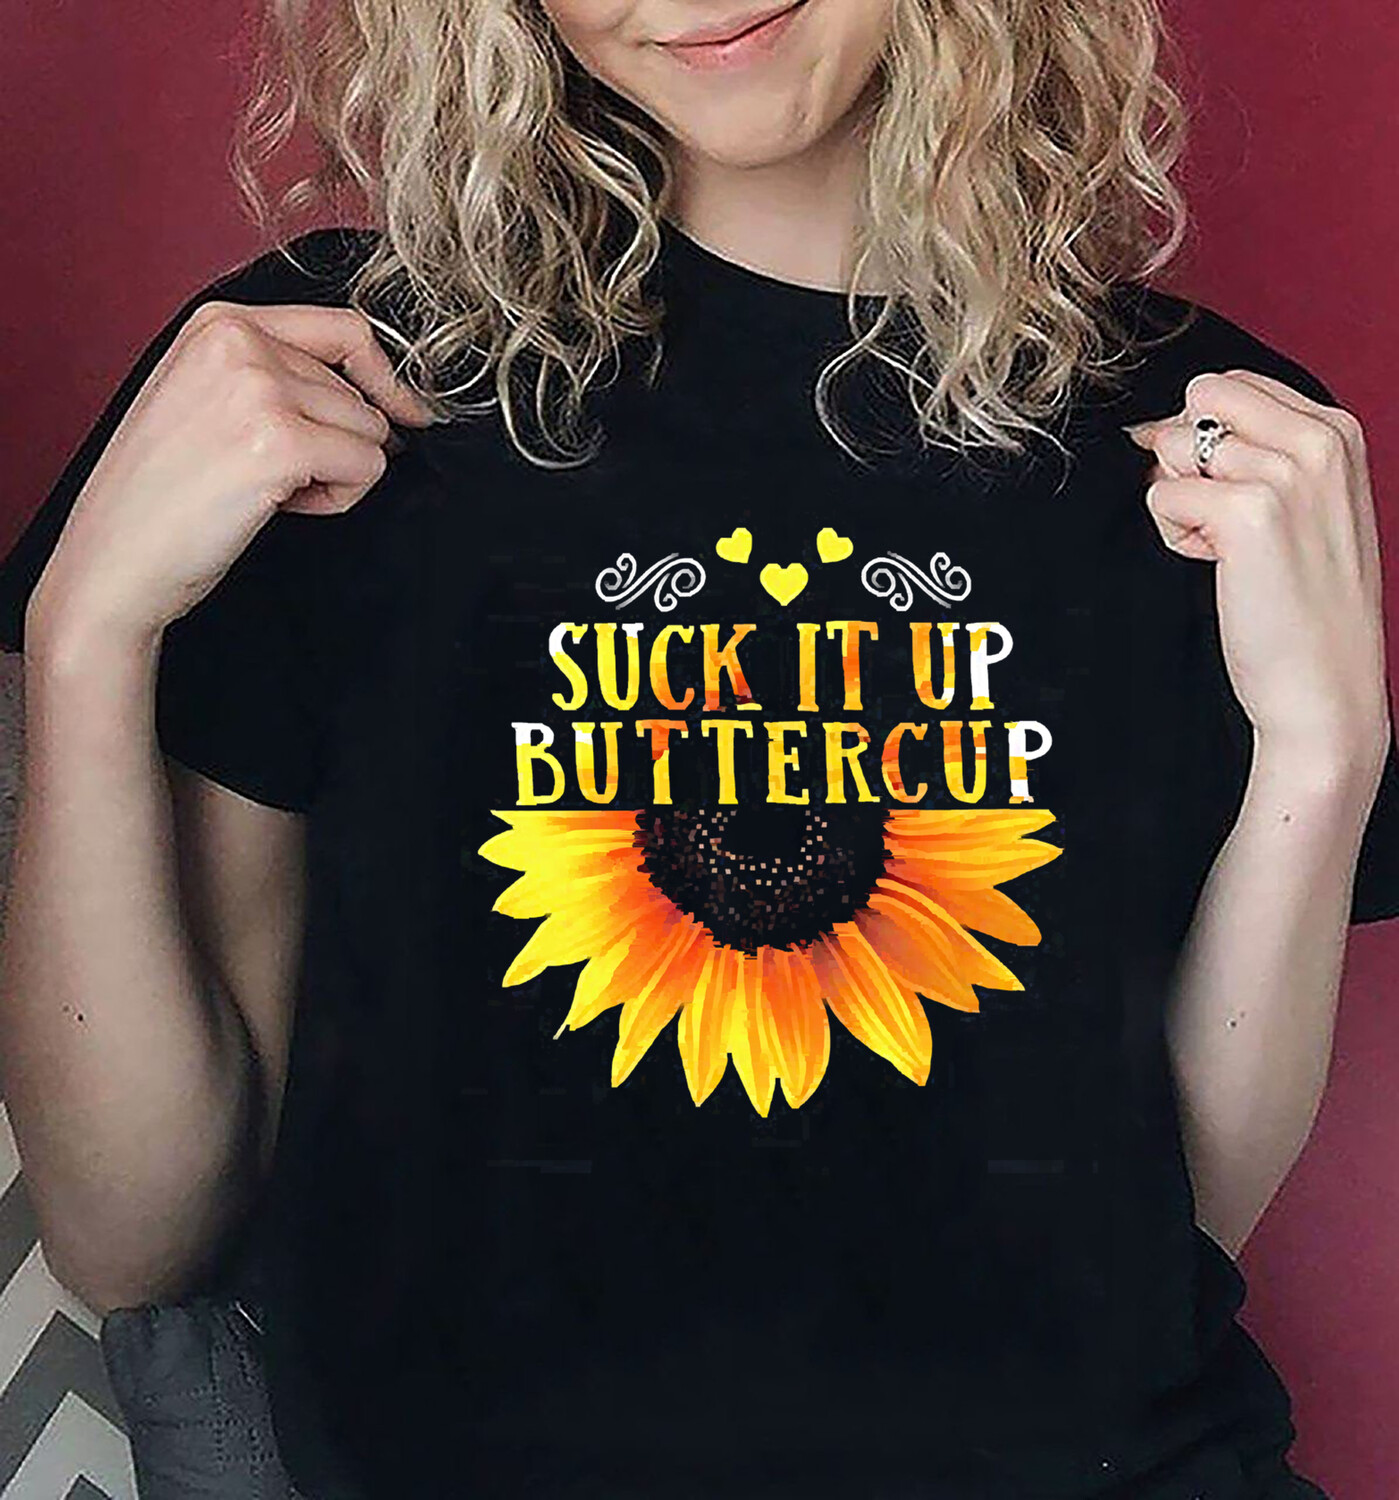 Suck It Up Buttercup T Shirt Sunflower Print Graphic Tee Shirt for Women - sunflower lover shirt - gift for sunflower lover - Unisex T-shirt, Hoodie, Sweatshirt All size